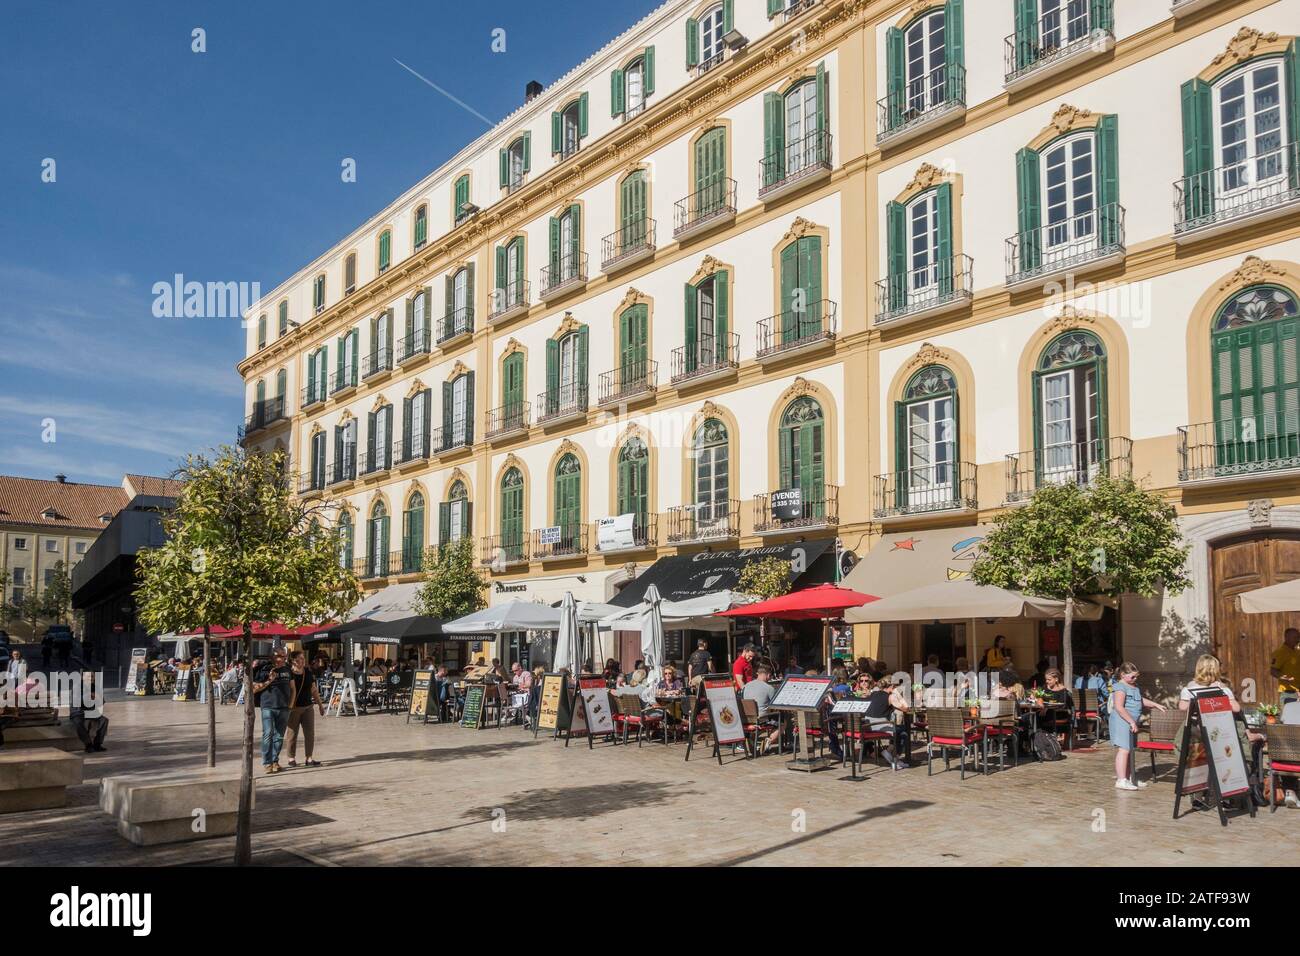 Malaga Spain. Plaza de la Merced (Mercy Square), public square, Malaga, Andalucia, Spain. Stock Photo